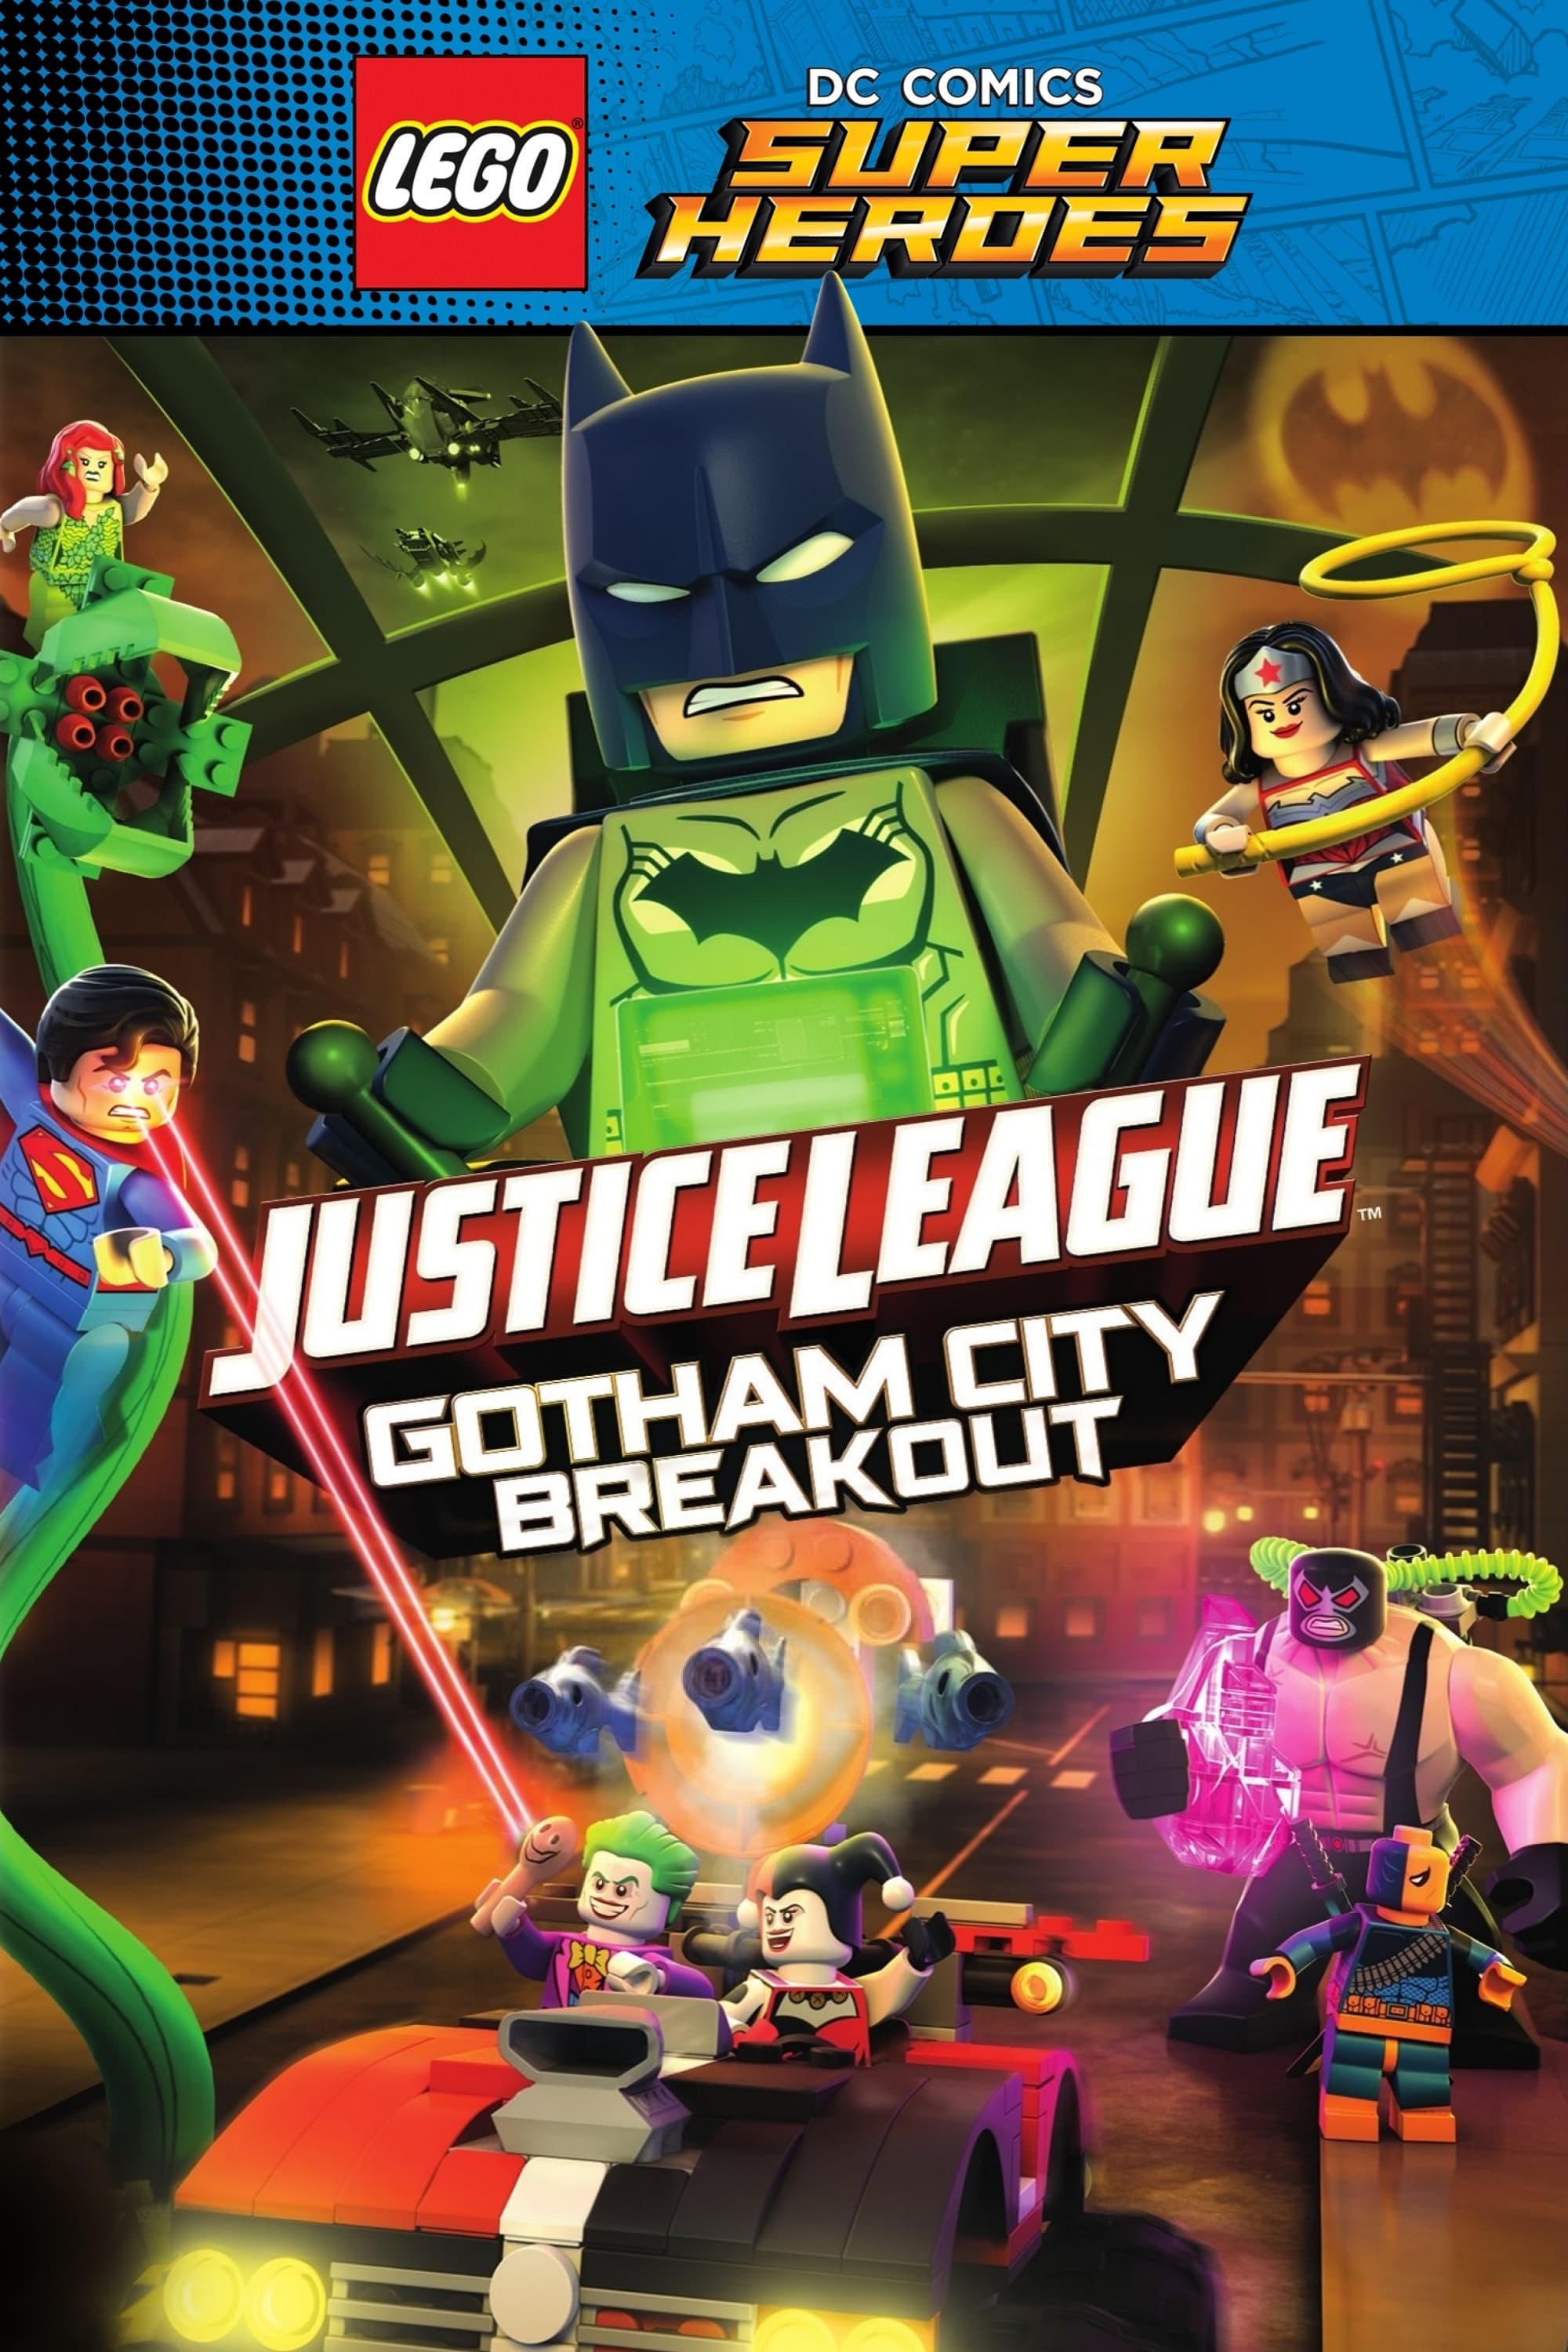 LEGO La Liga de la Justicia: Fuga de Gotham